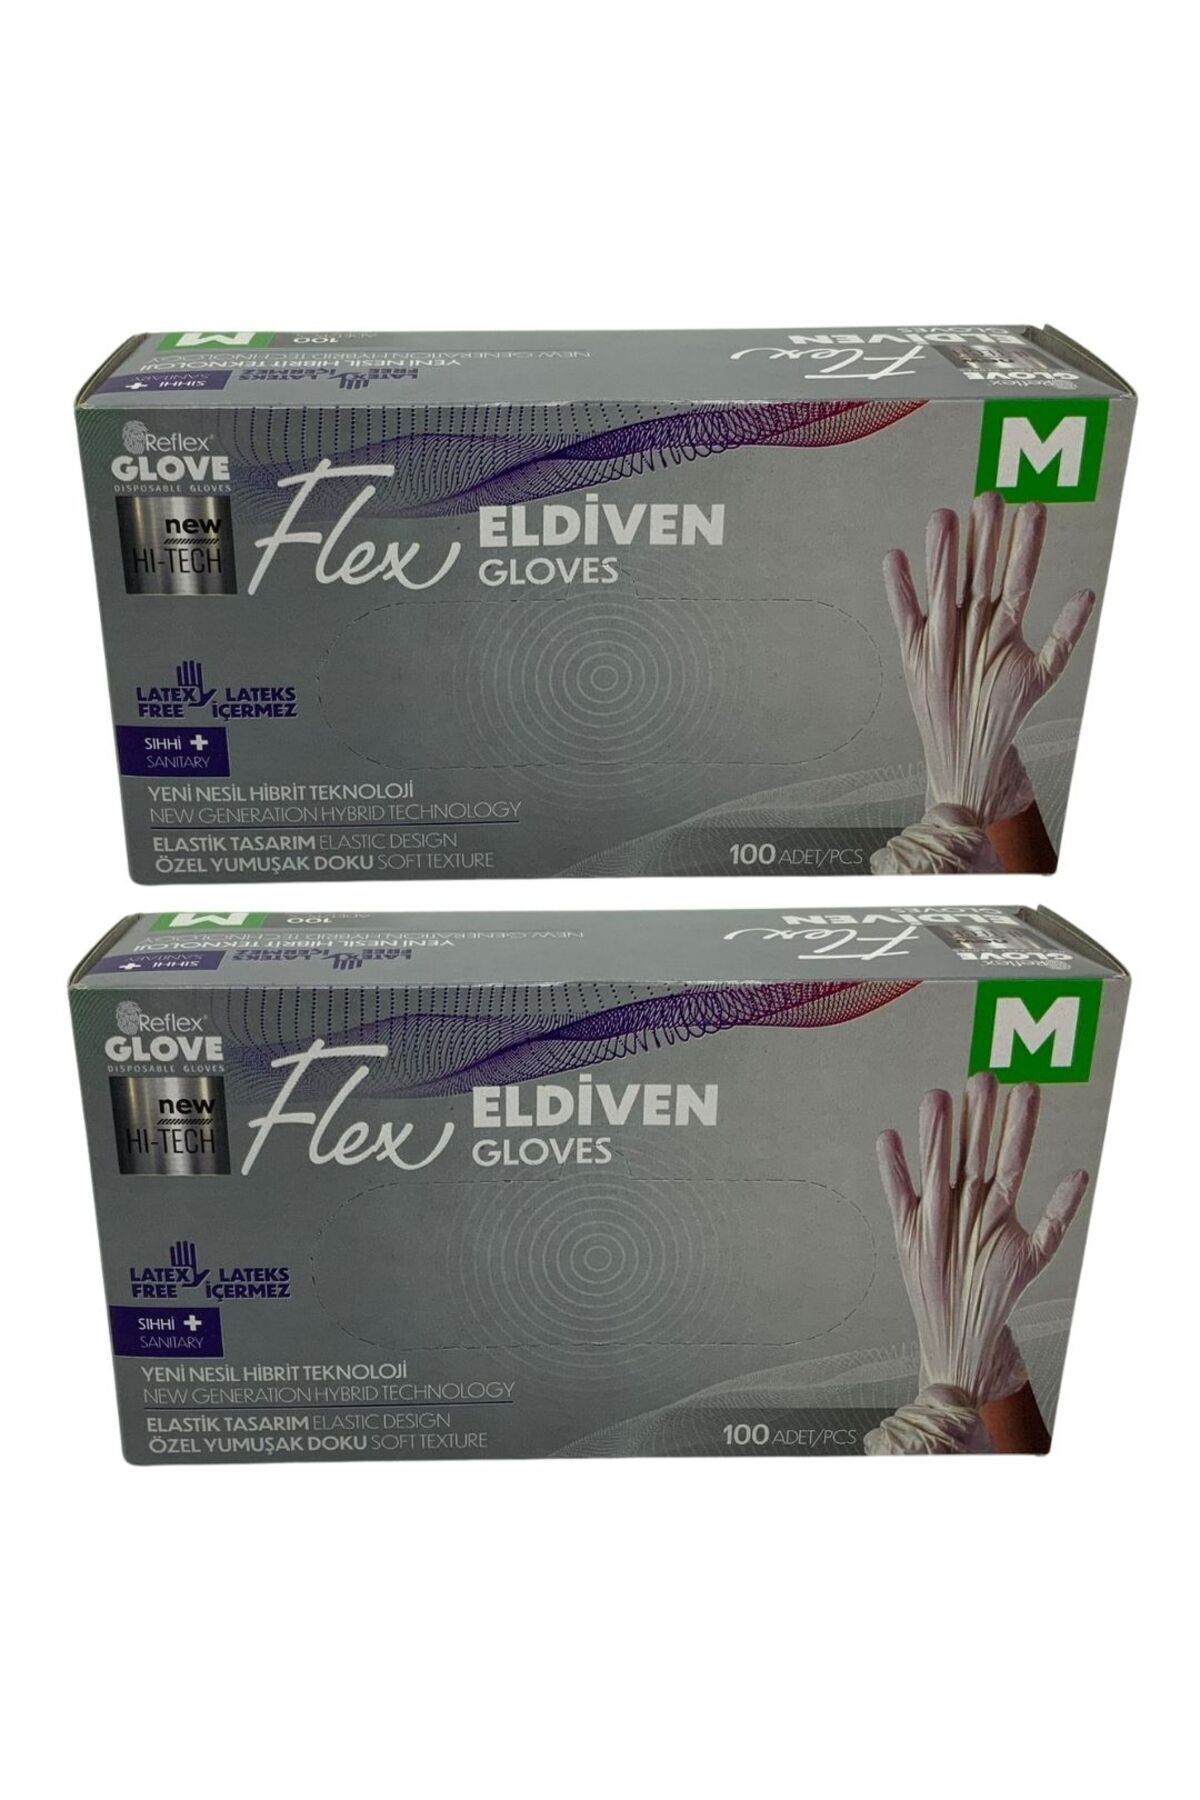 Reflex Glove Flex Eldiven M 100 Adet 2 Adet